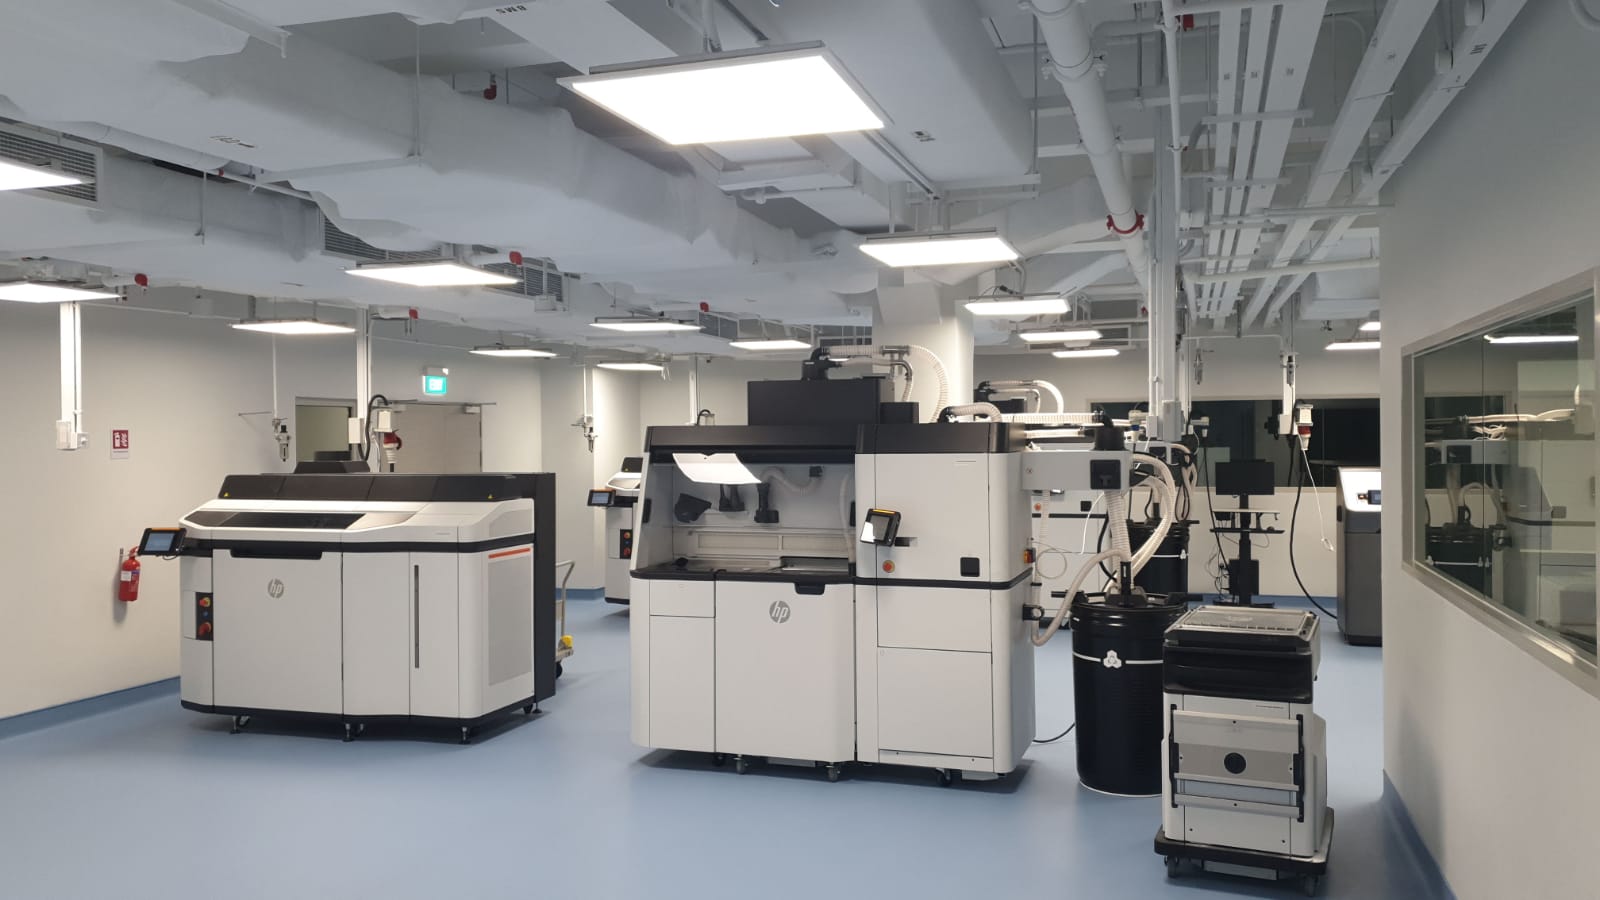 Main 3D Printing Lab HP printers